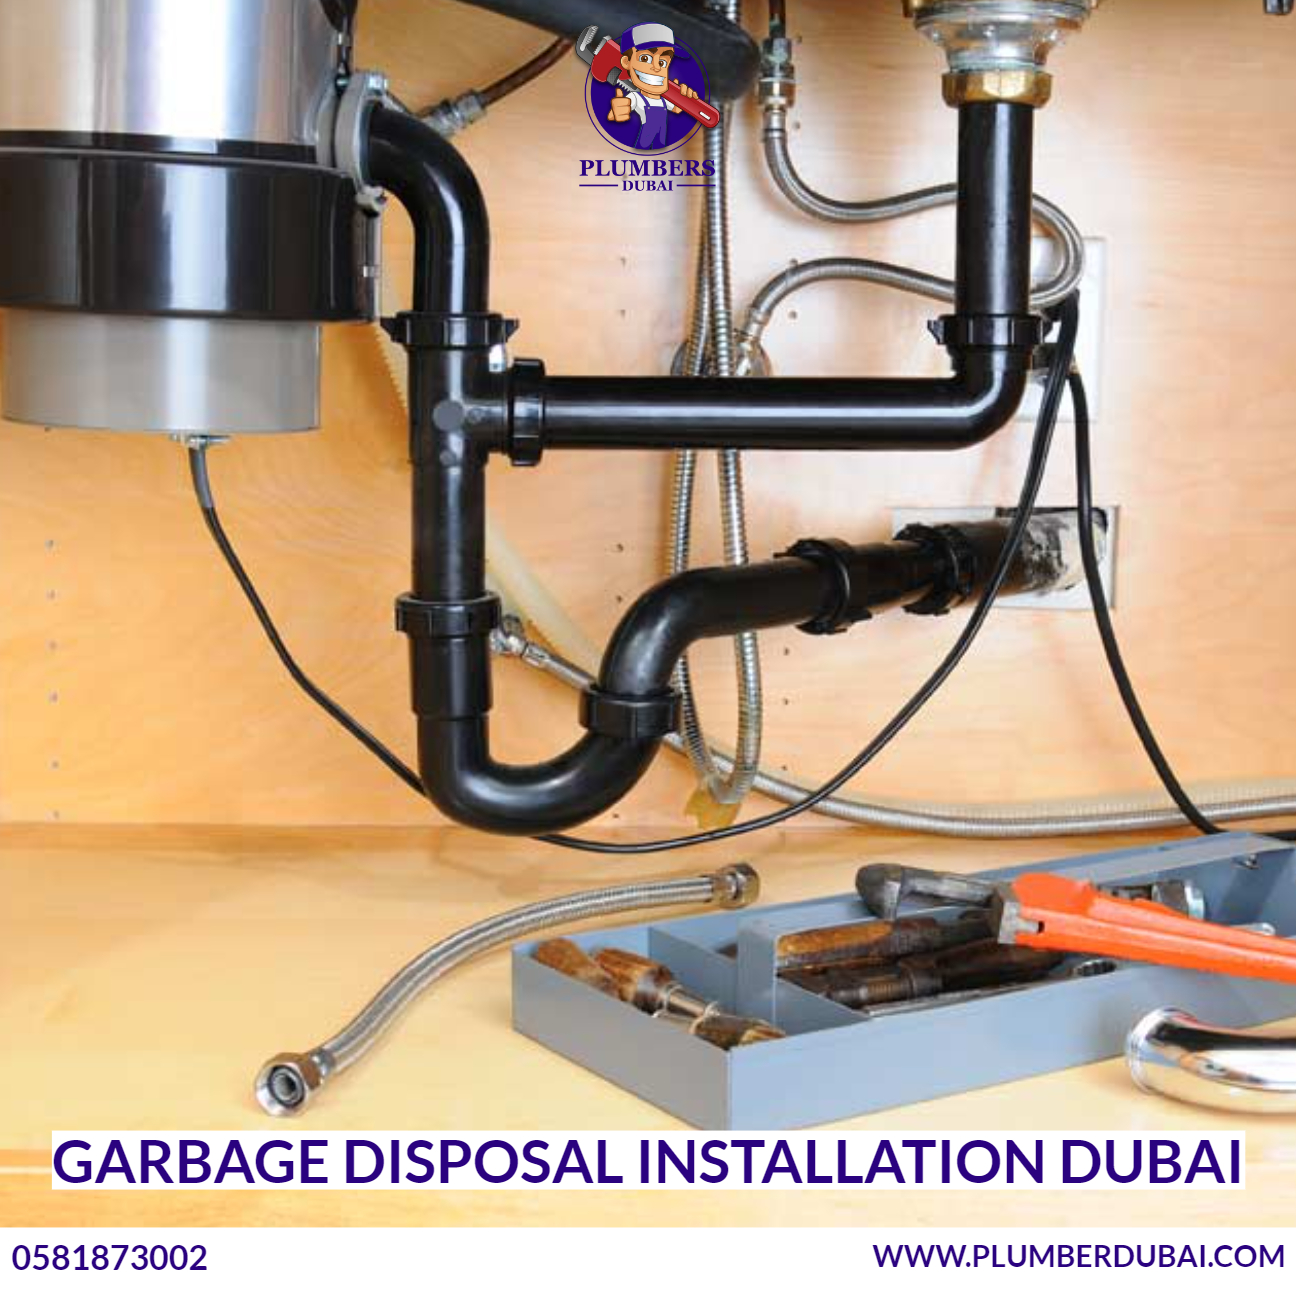 Garbage Disposal Installation Dubai